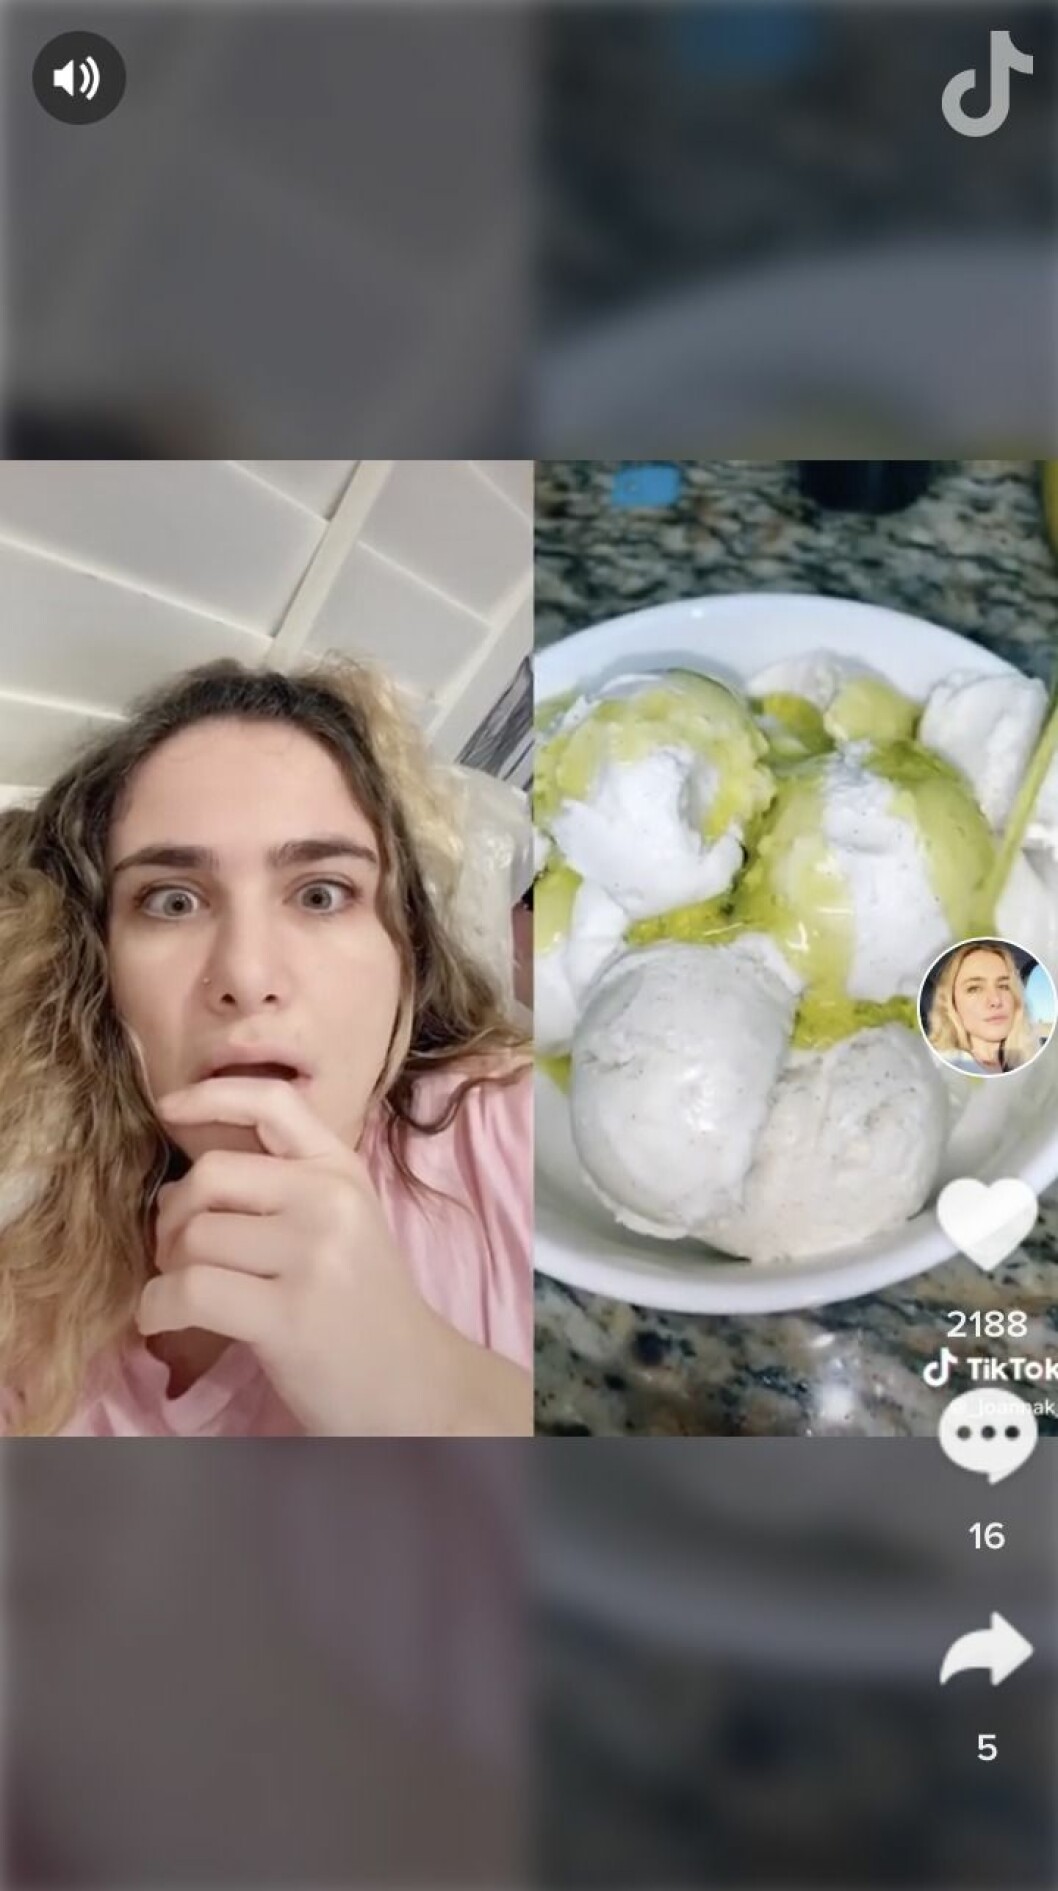 En tjej ser chockad ut och tittar på en video på glass med olivolja och salt